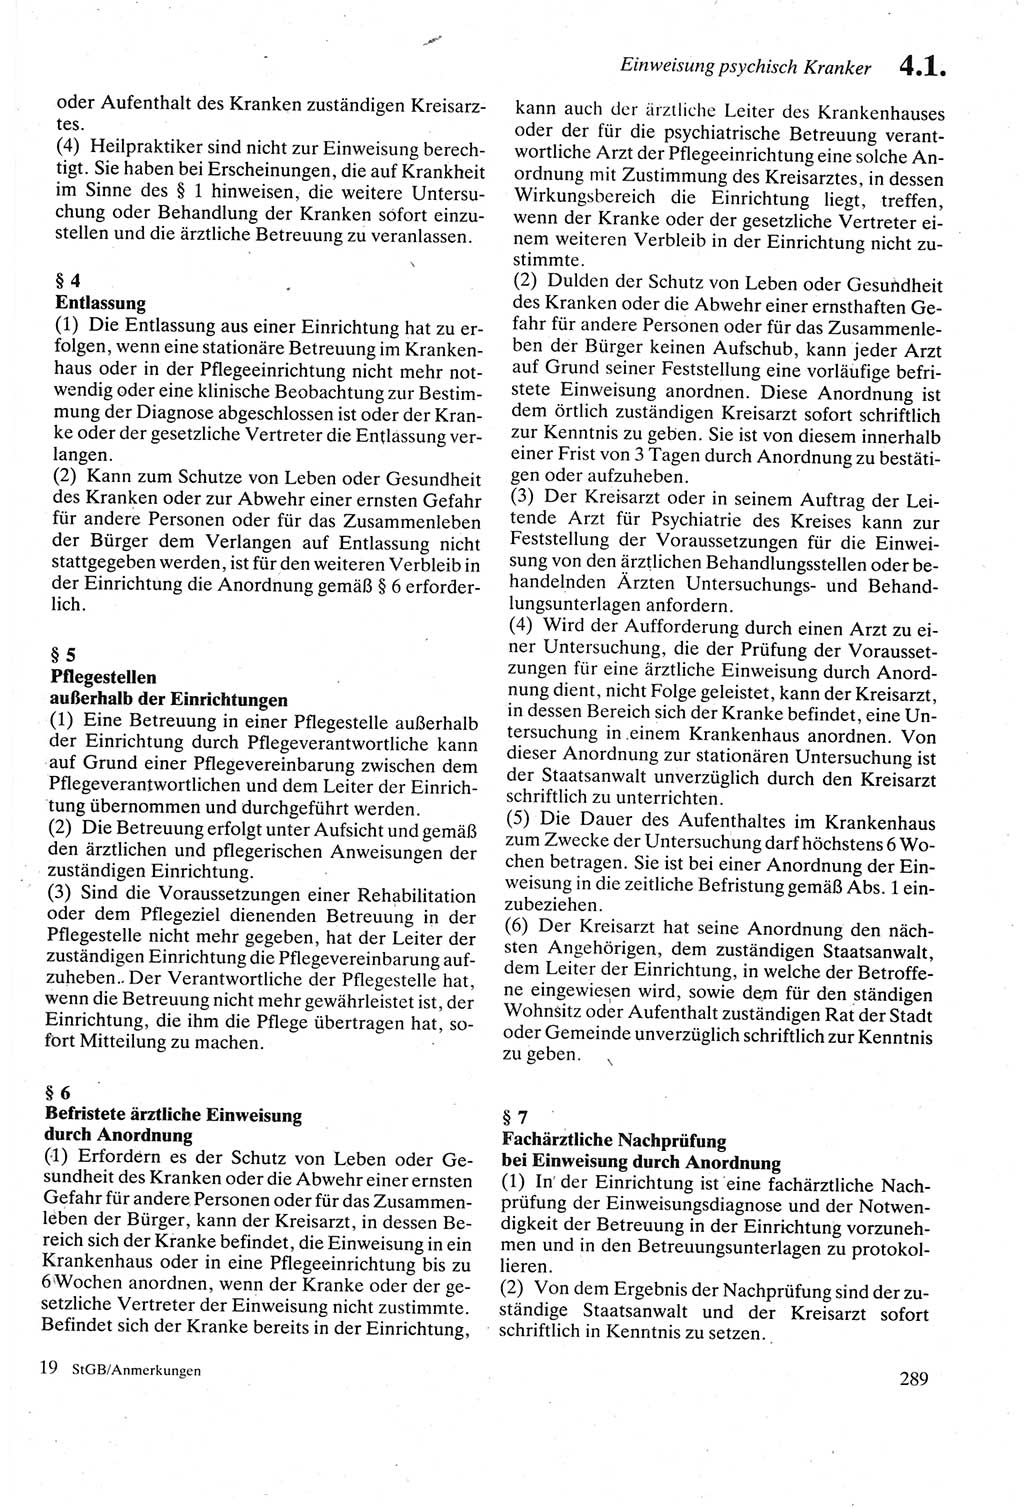 Strafgesetzbuch (StGB) der Deutschen Demokratischen Republik (DDR) sowie angrenzende Gesetze und Bestimmungen 1979, Seite 289 (StGB DDR Ges. Best. 1979, S. 289)